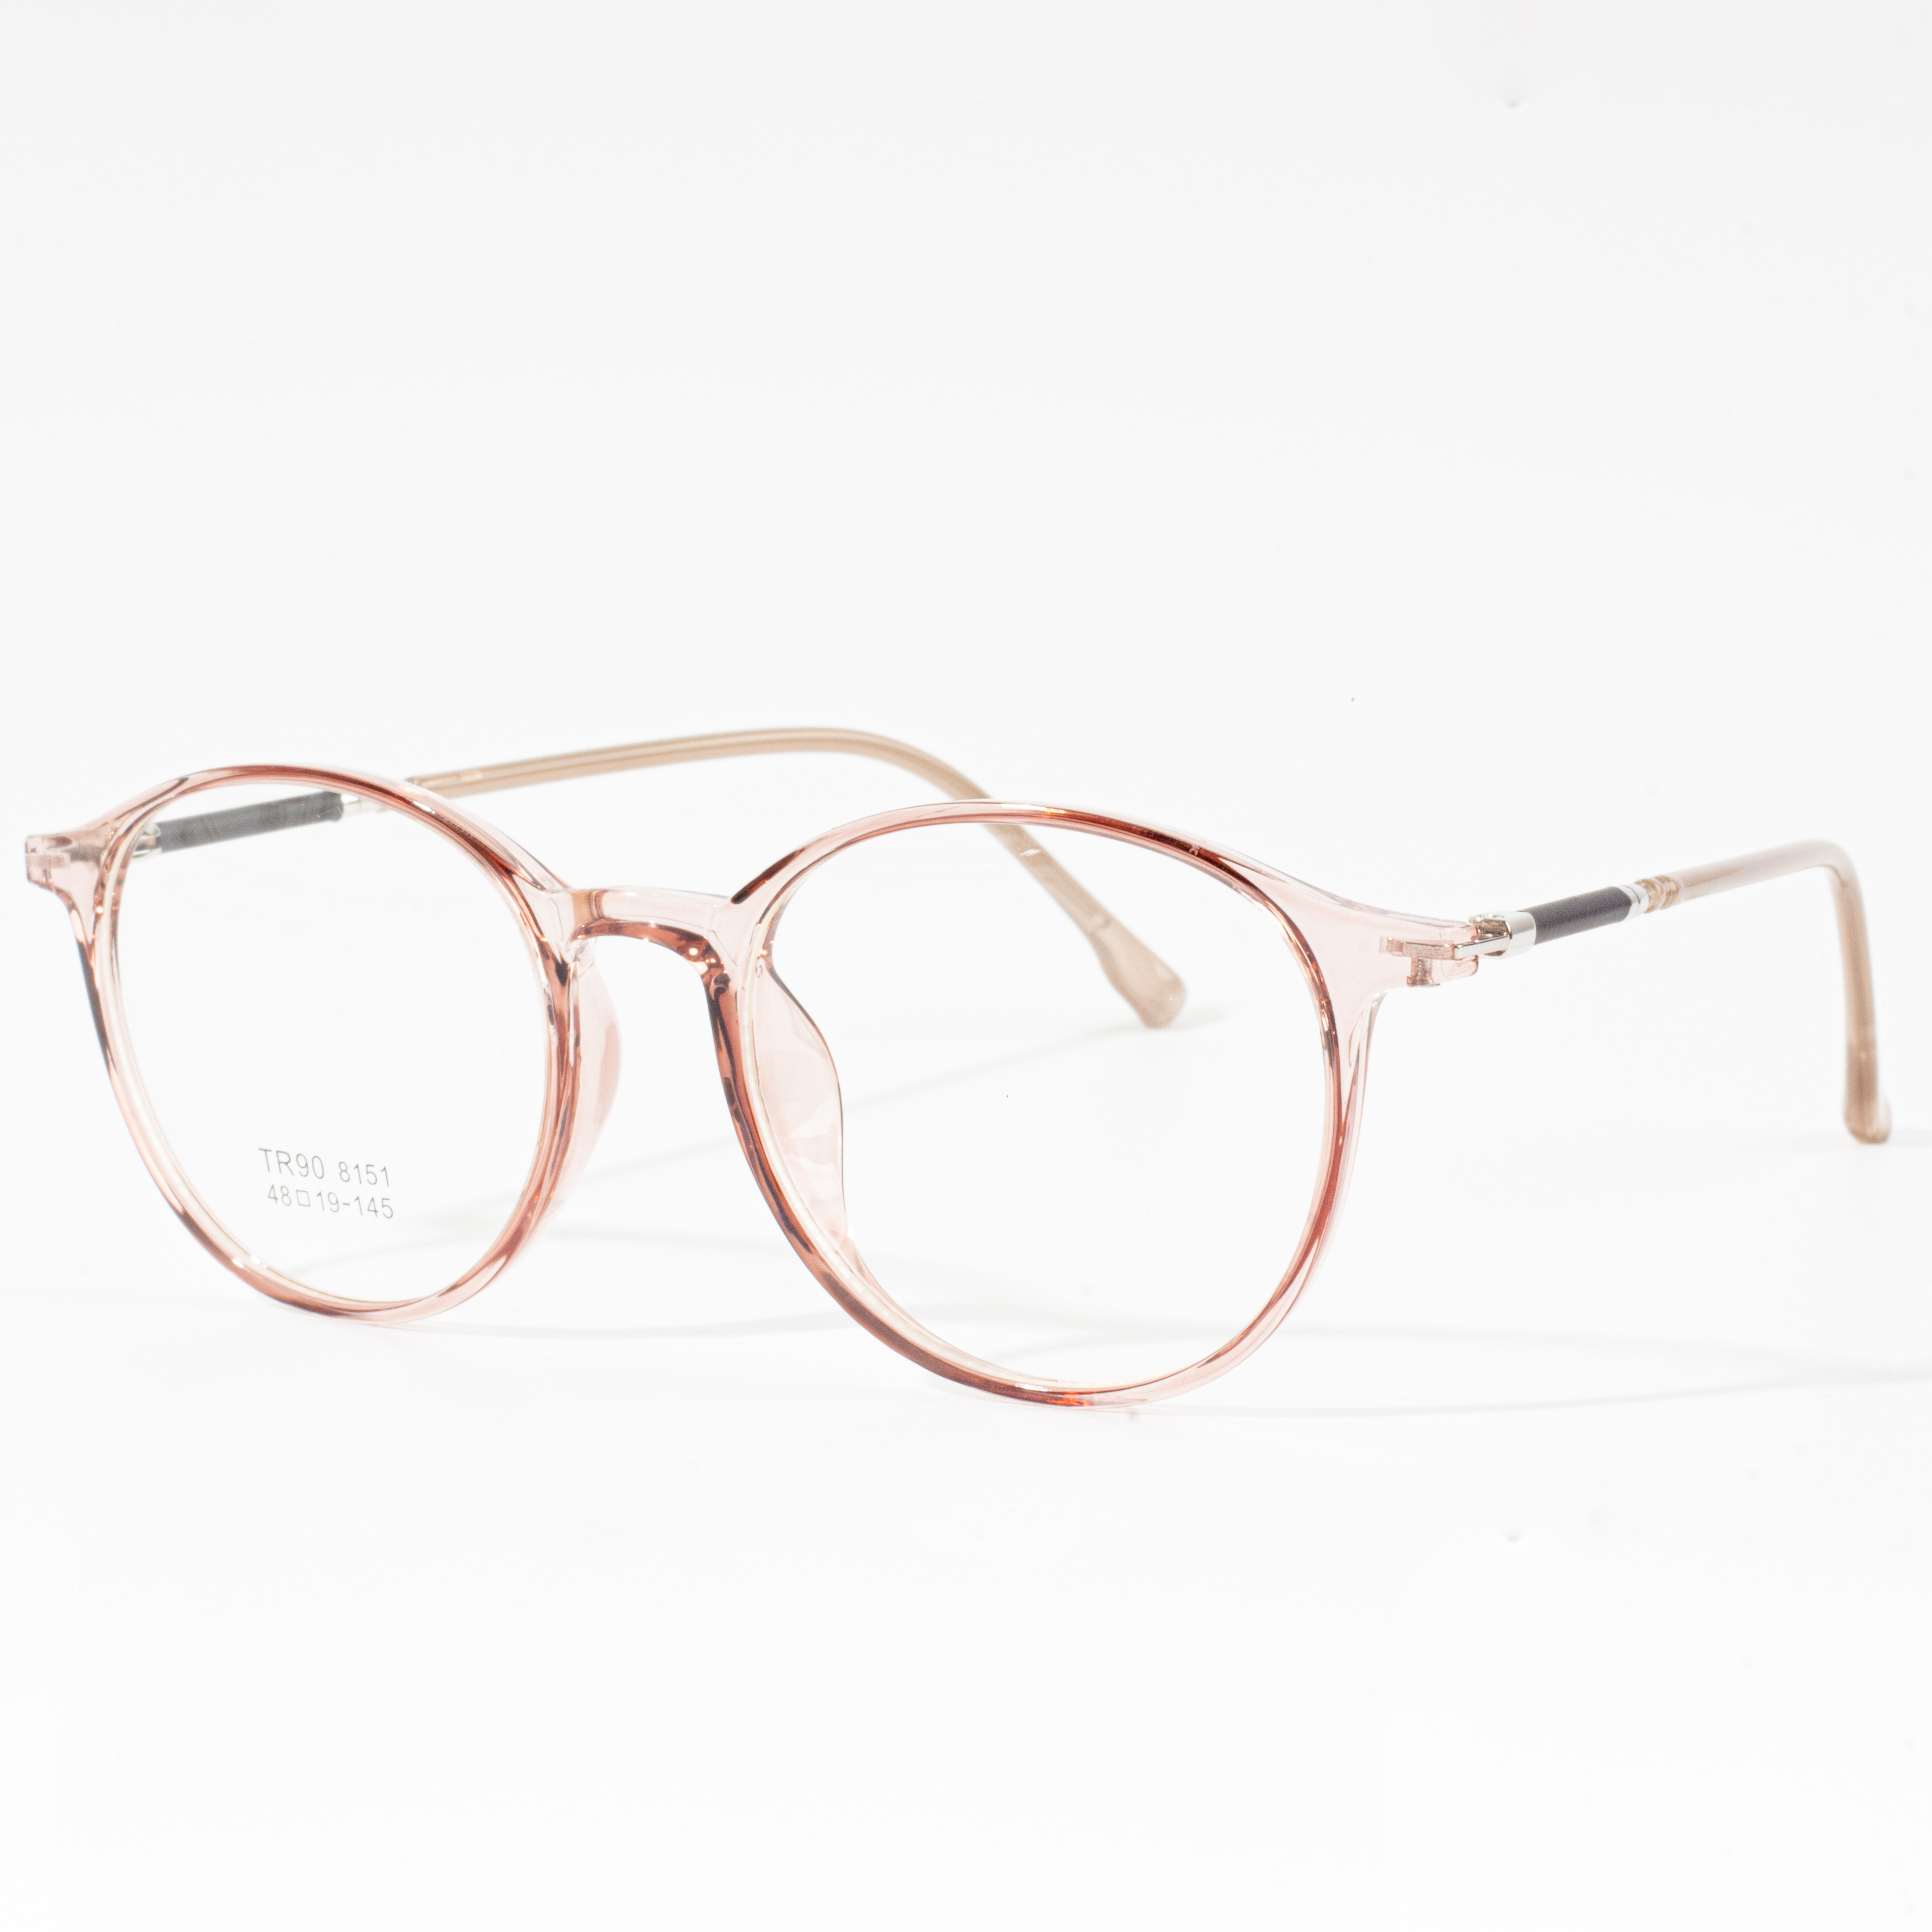 Männer & Damen Designer Frames - Eyeglasses.com 广告· https://www.eyeglasses.com/ (888) 896-3885 Shop Designer Frames Vun Top Global Brëller Marken Fir Halschent Off Retail Präisser haut.